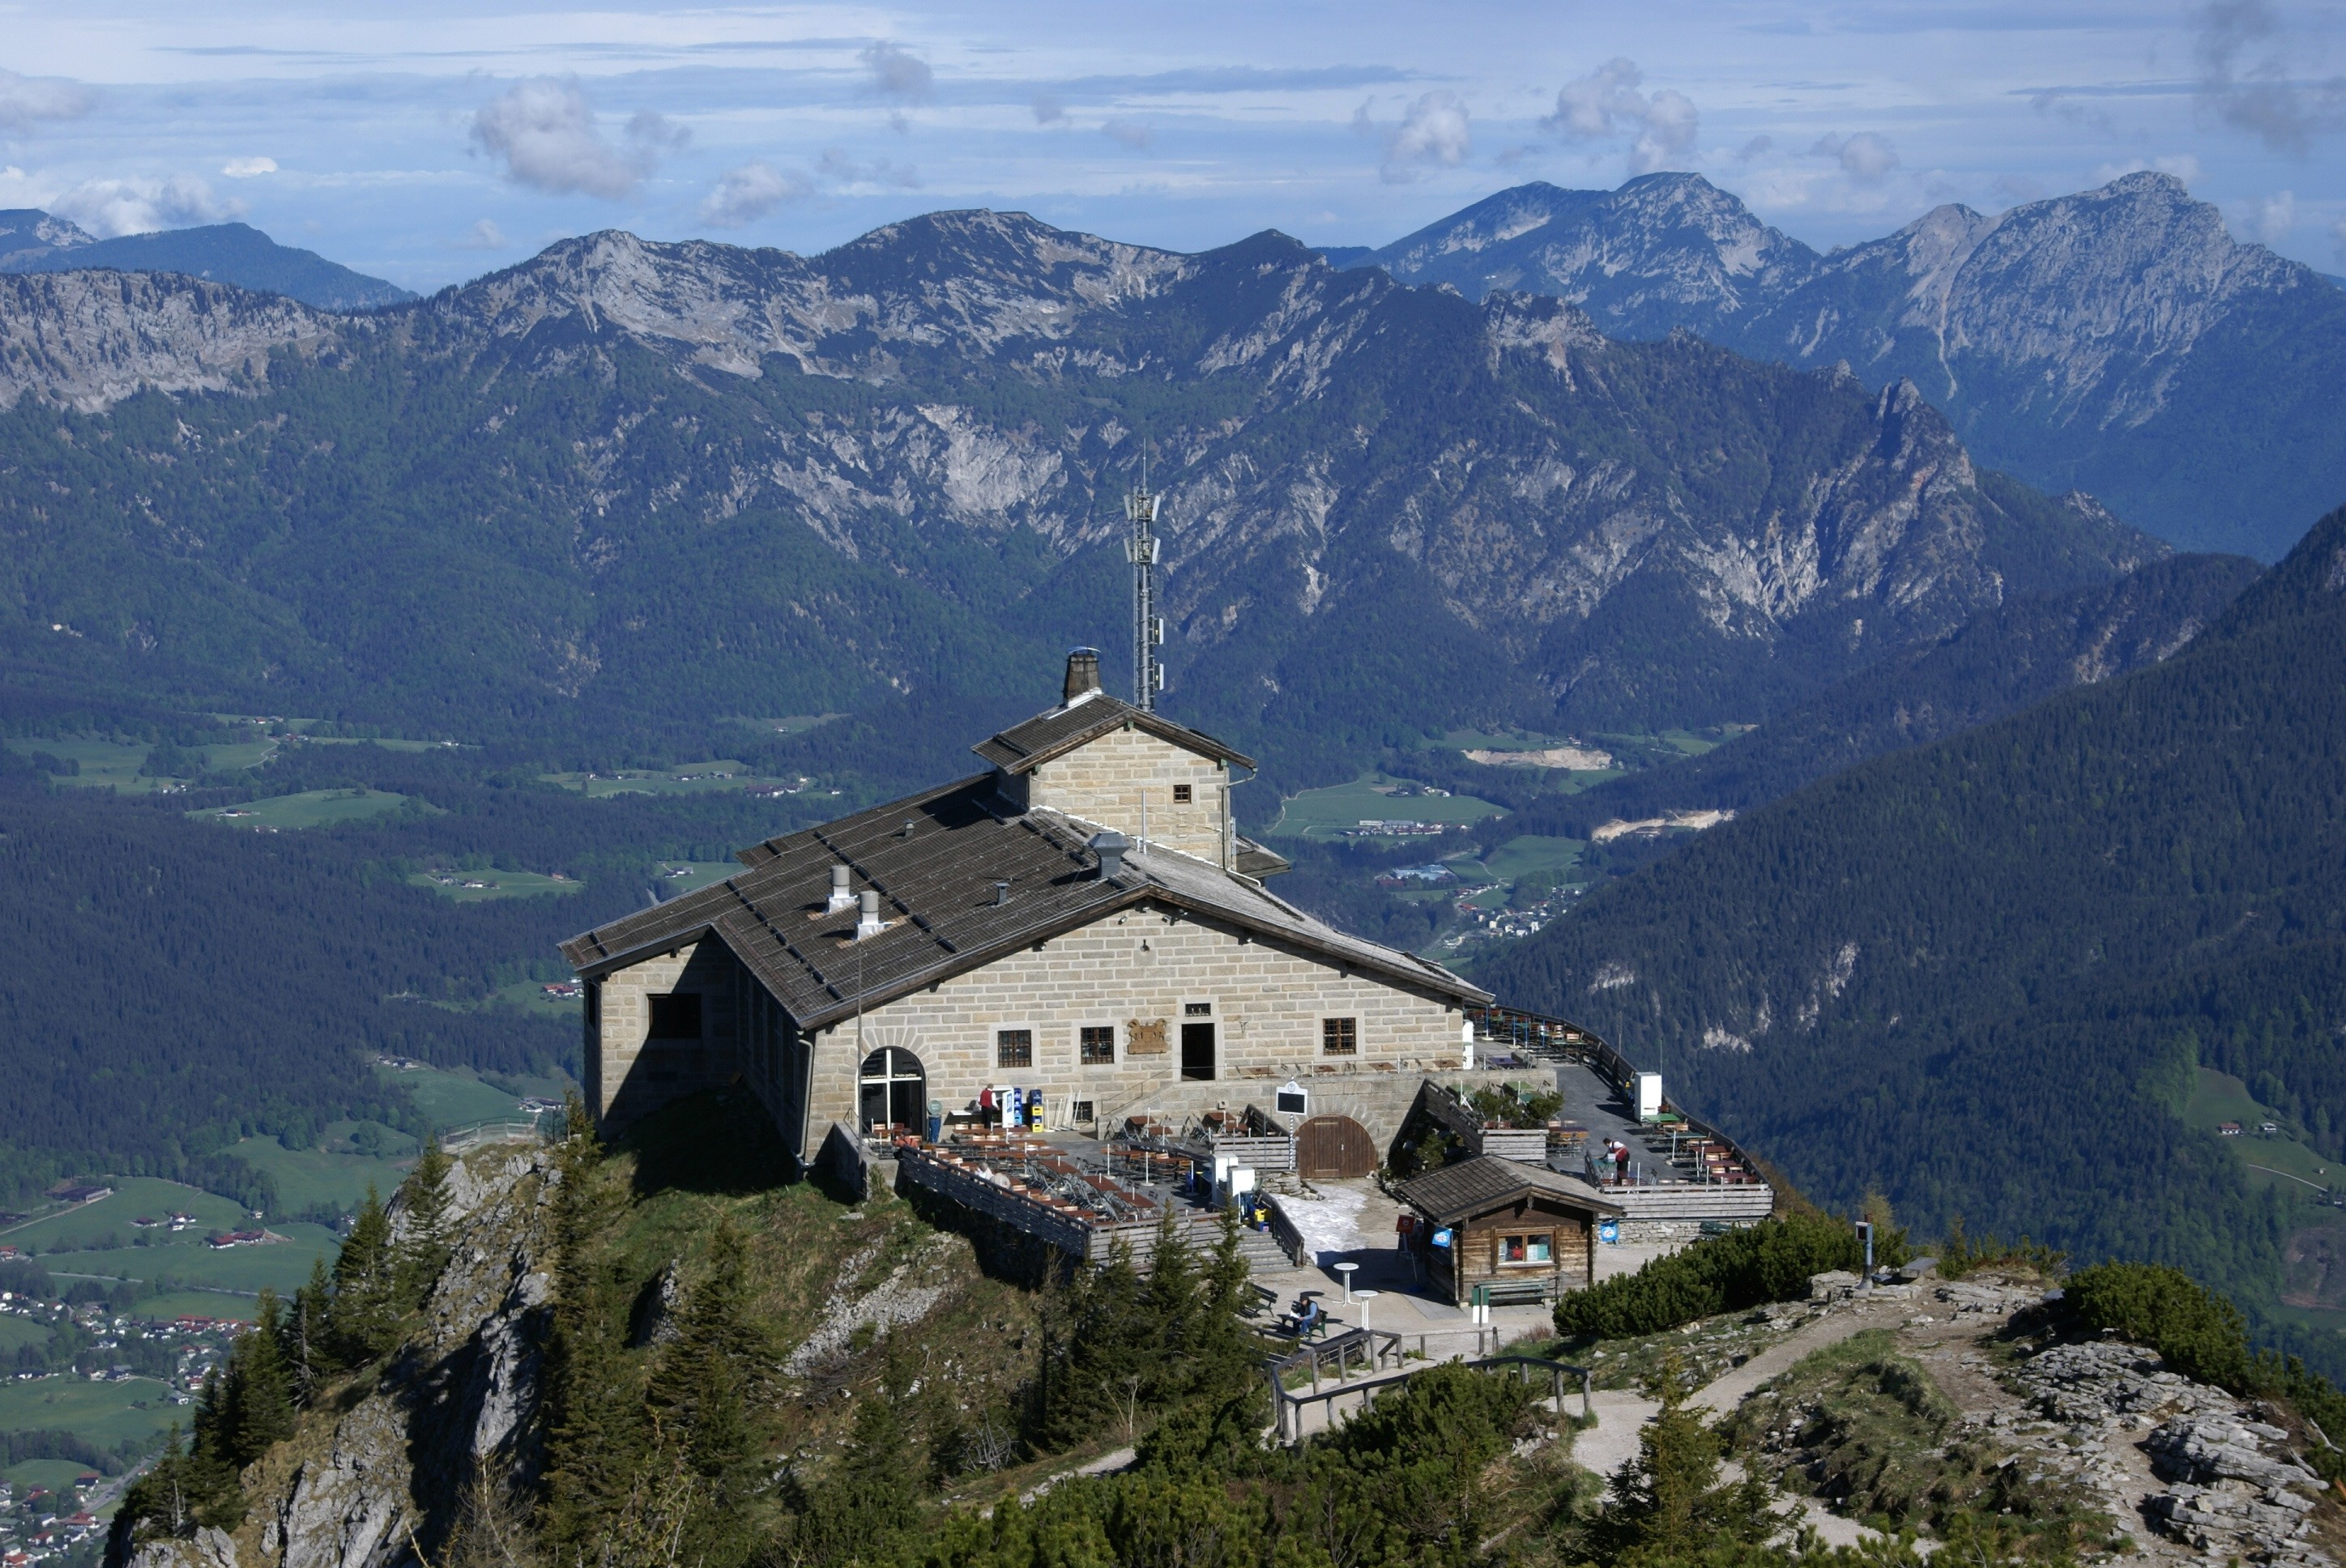 Das Bergrestaurant Kehlsteinhaus auf dem Obersalzberg in Berchtesgaden.
